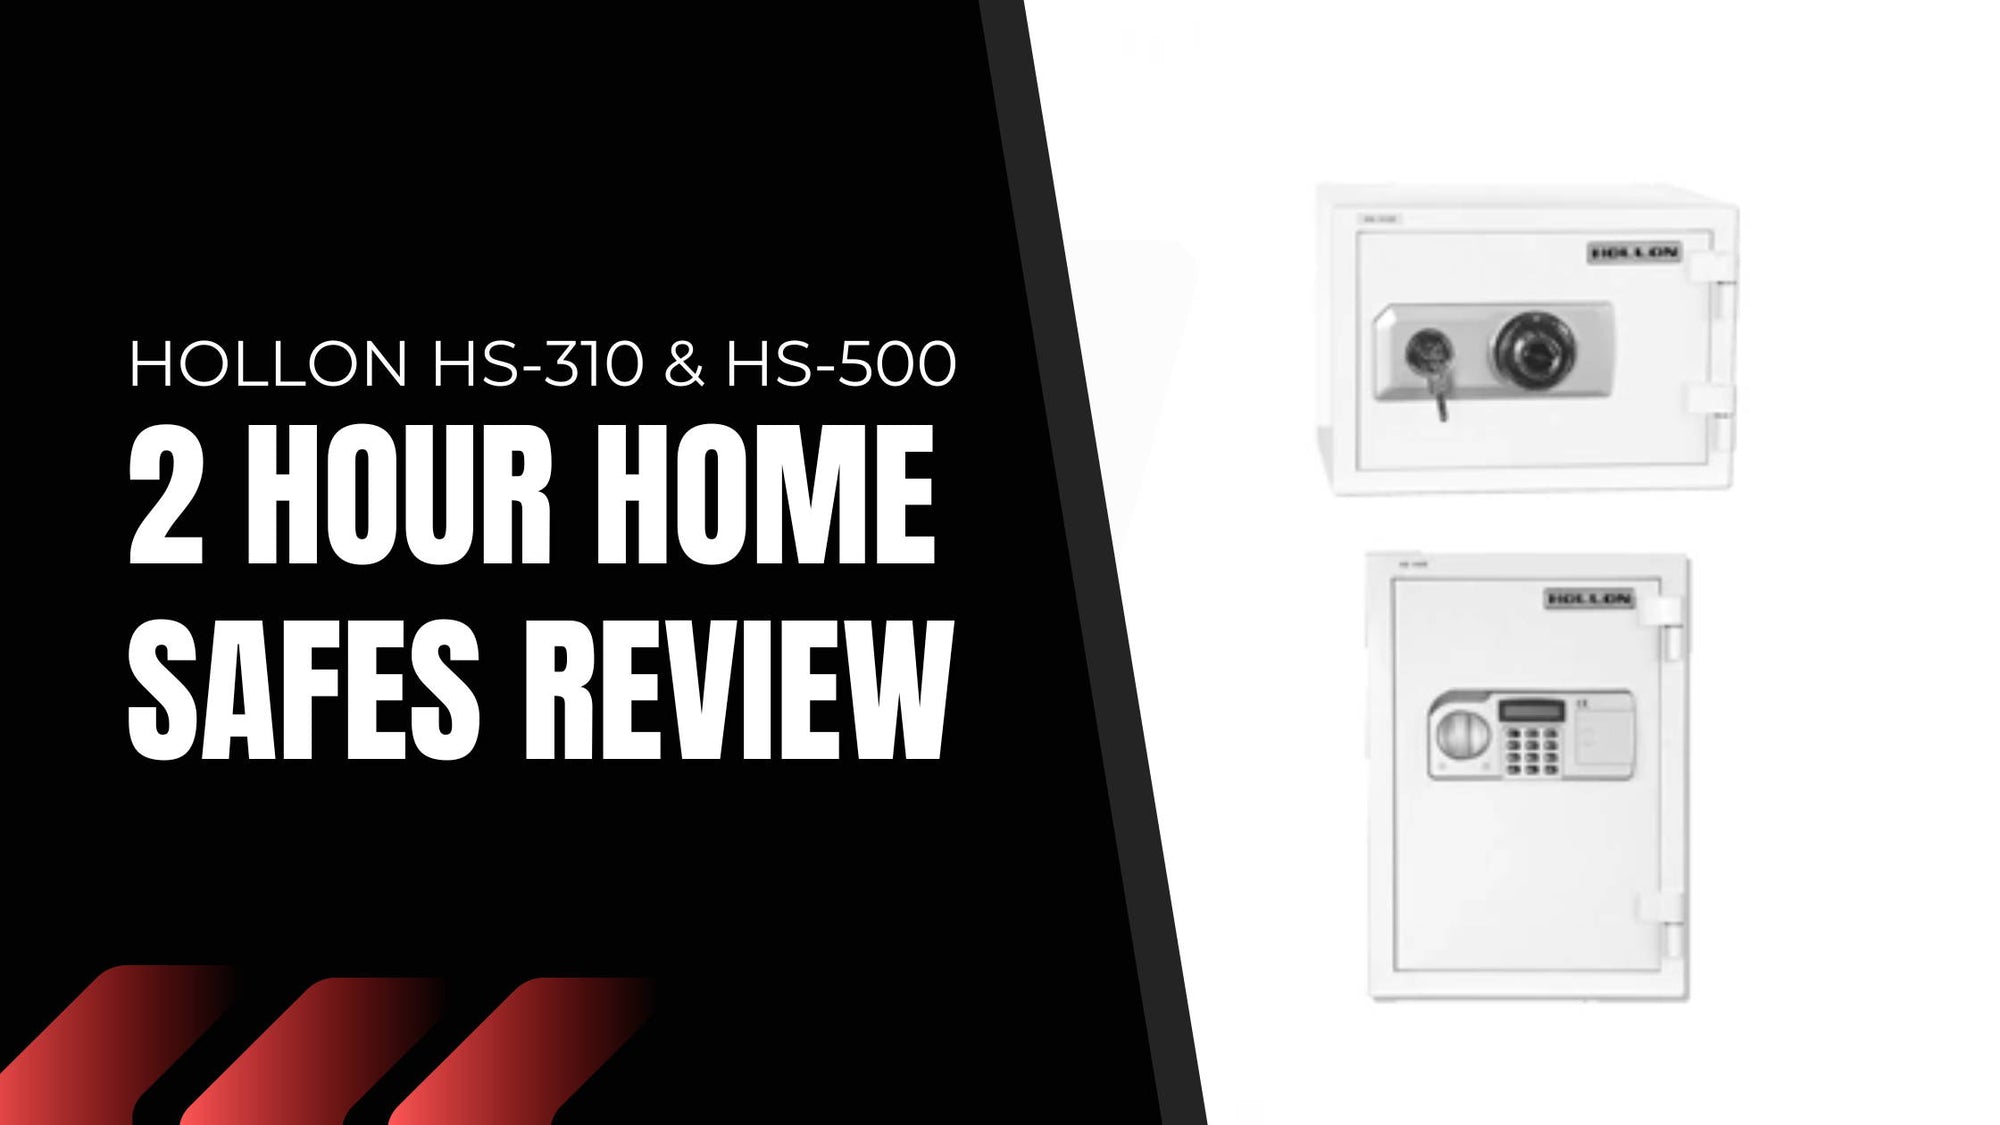 Hollon HS-310 & HS-500 2 Hour Home Safes Review